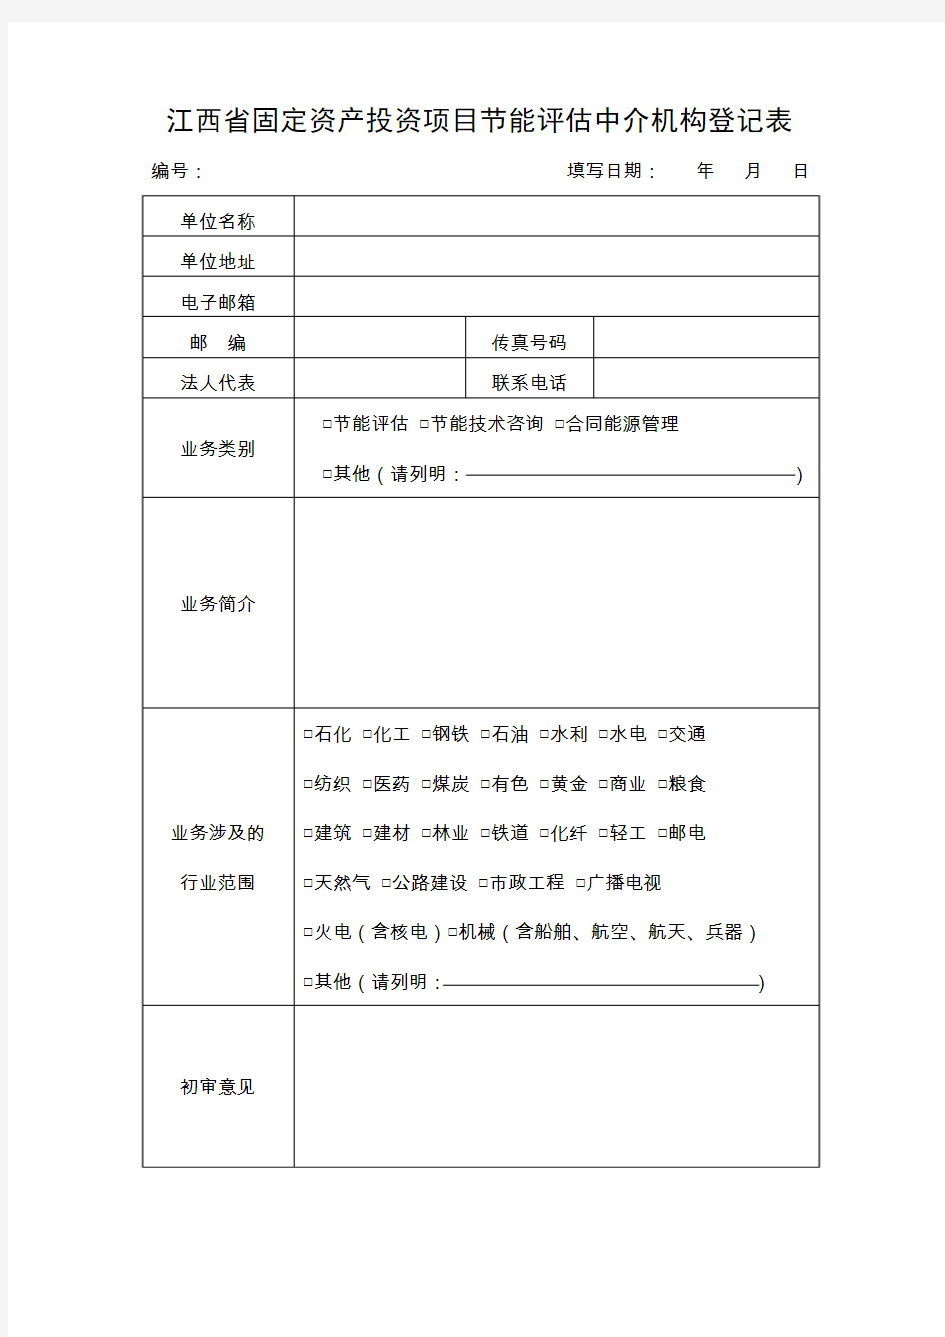 江西省节能评估中介机构备案登记表 - 江西省发改委